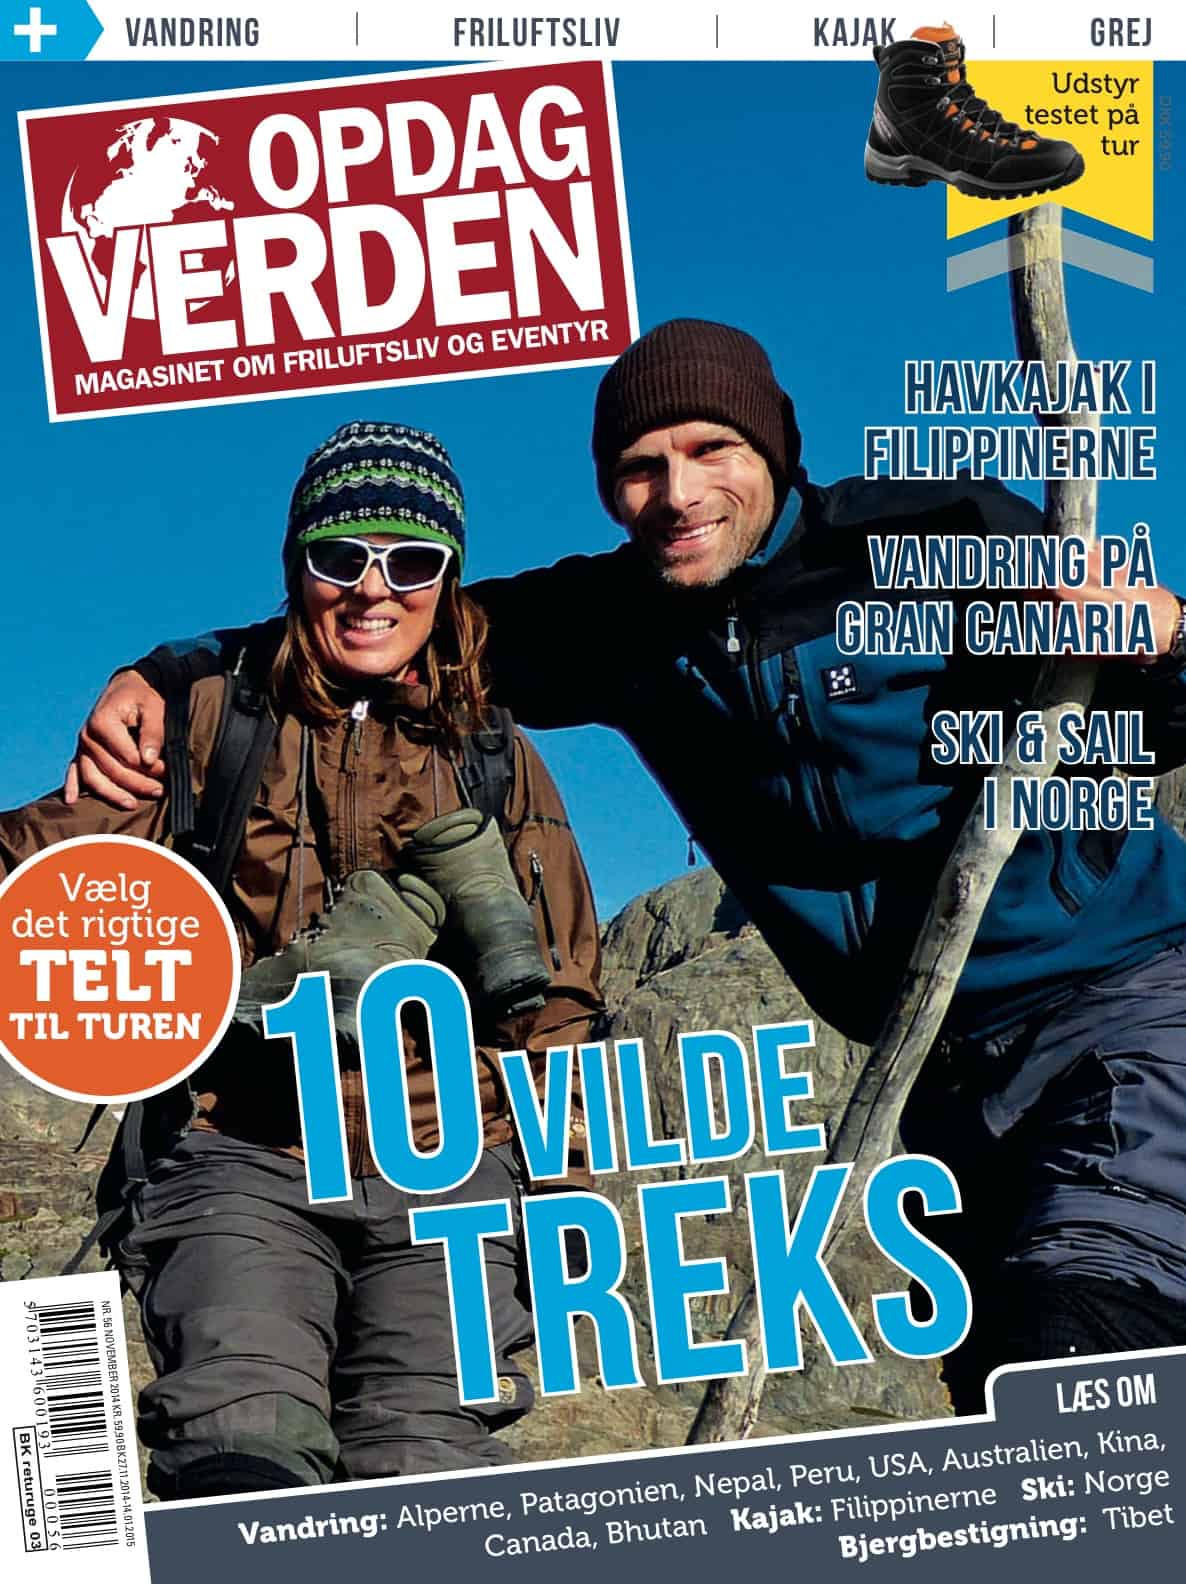 Coverbillede - Opdag Verden nr. 56 - December 2014